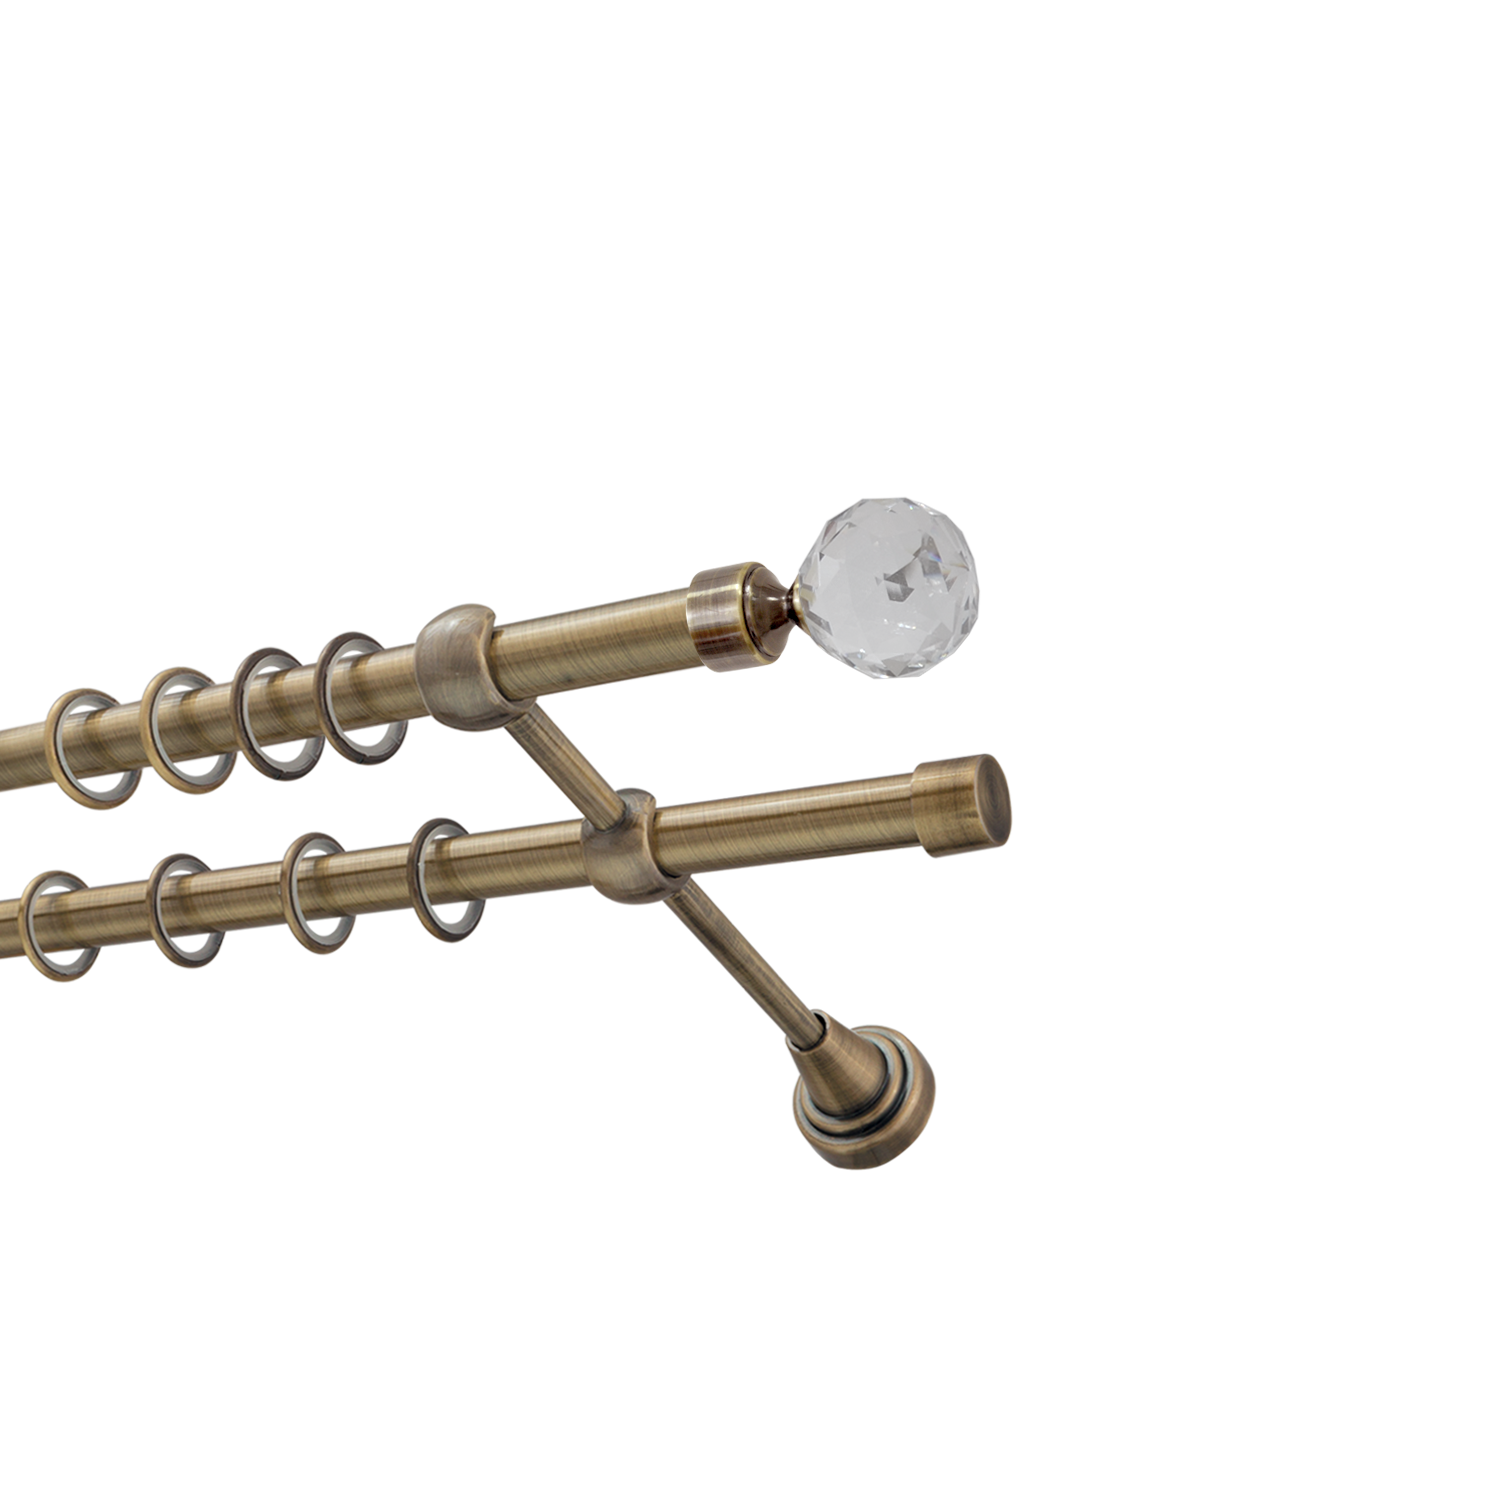 Металлический карниз для штор Карат, двухрядный 16/16 мм, бронза, гладкая штанга, длина 180 см - фото Wikidecor.ru